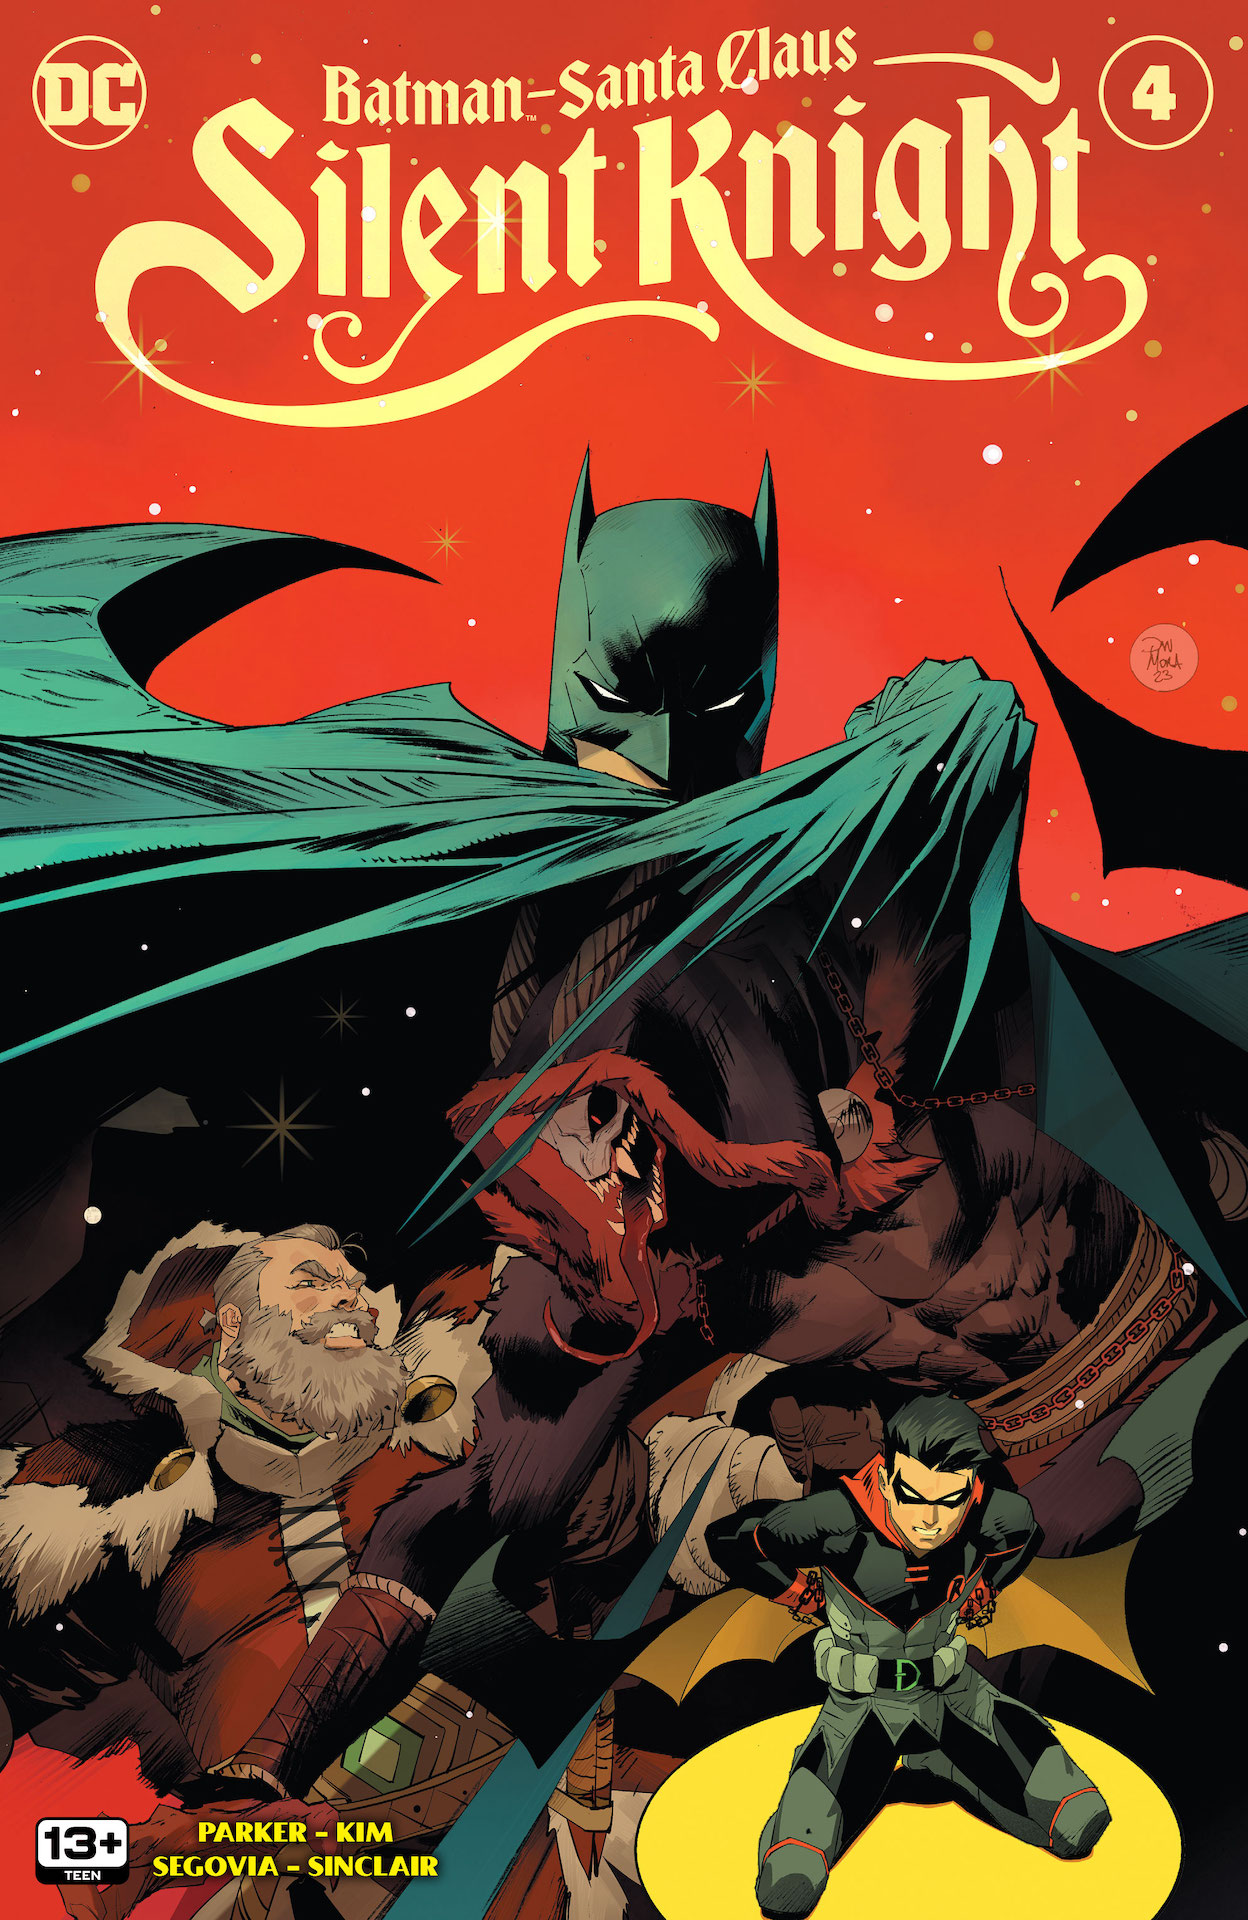 DC Preview: Batman / Santa Claus: Silent Knight #4